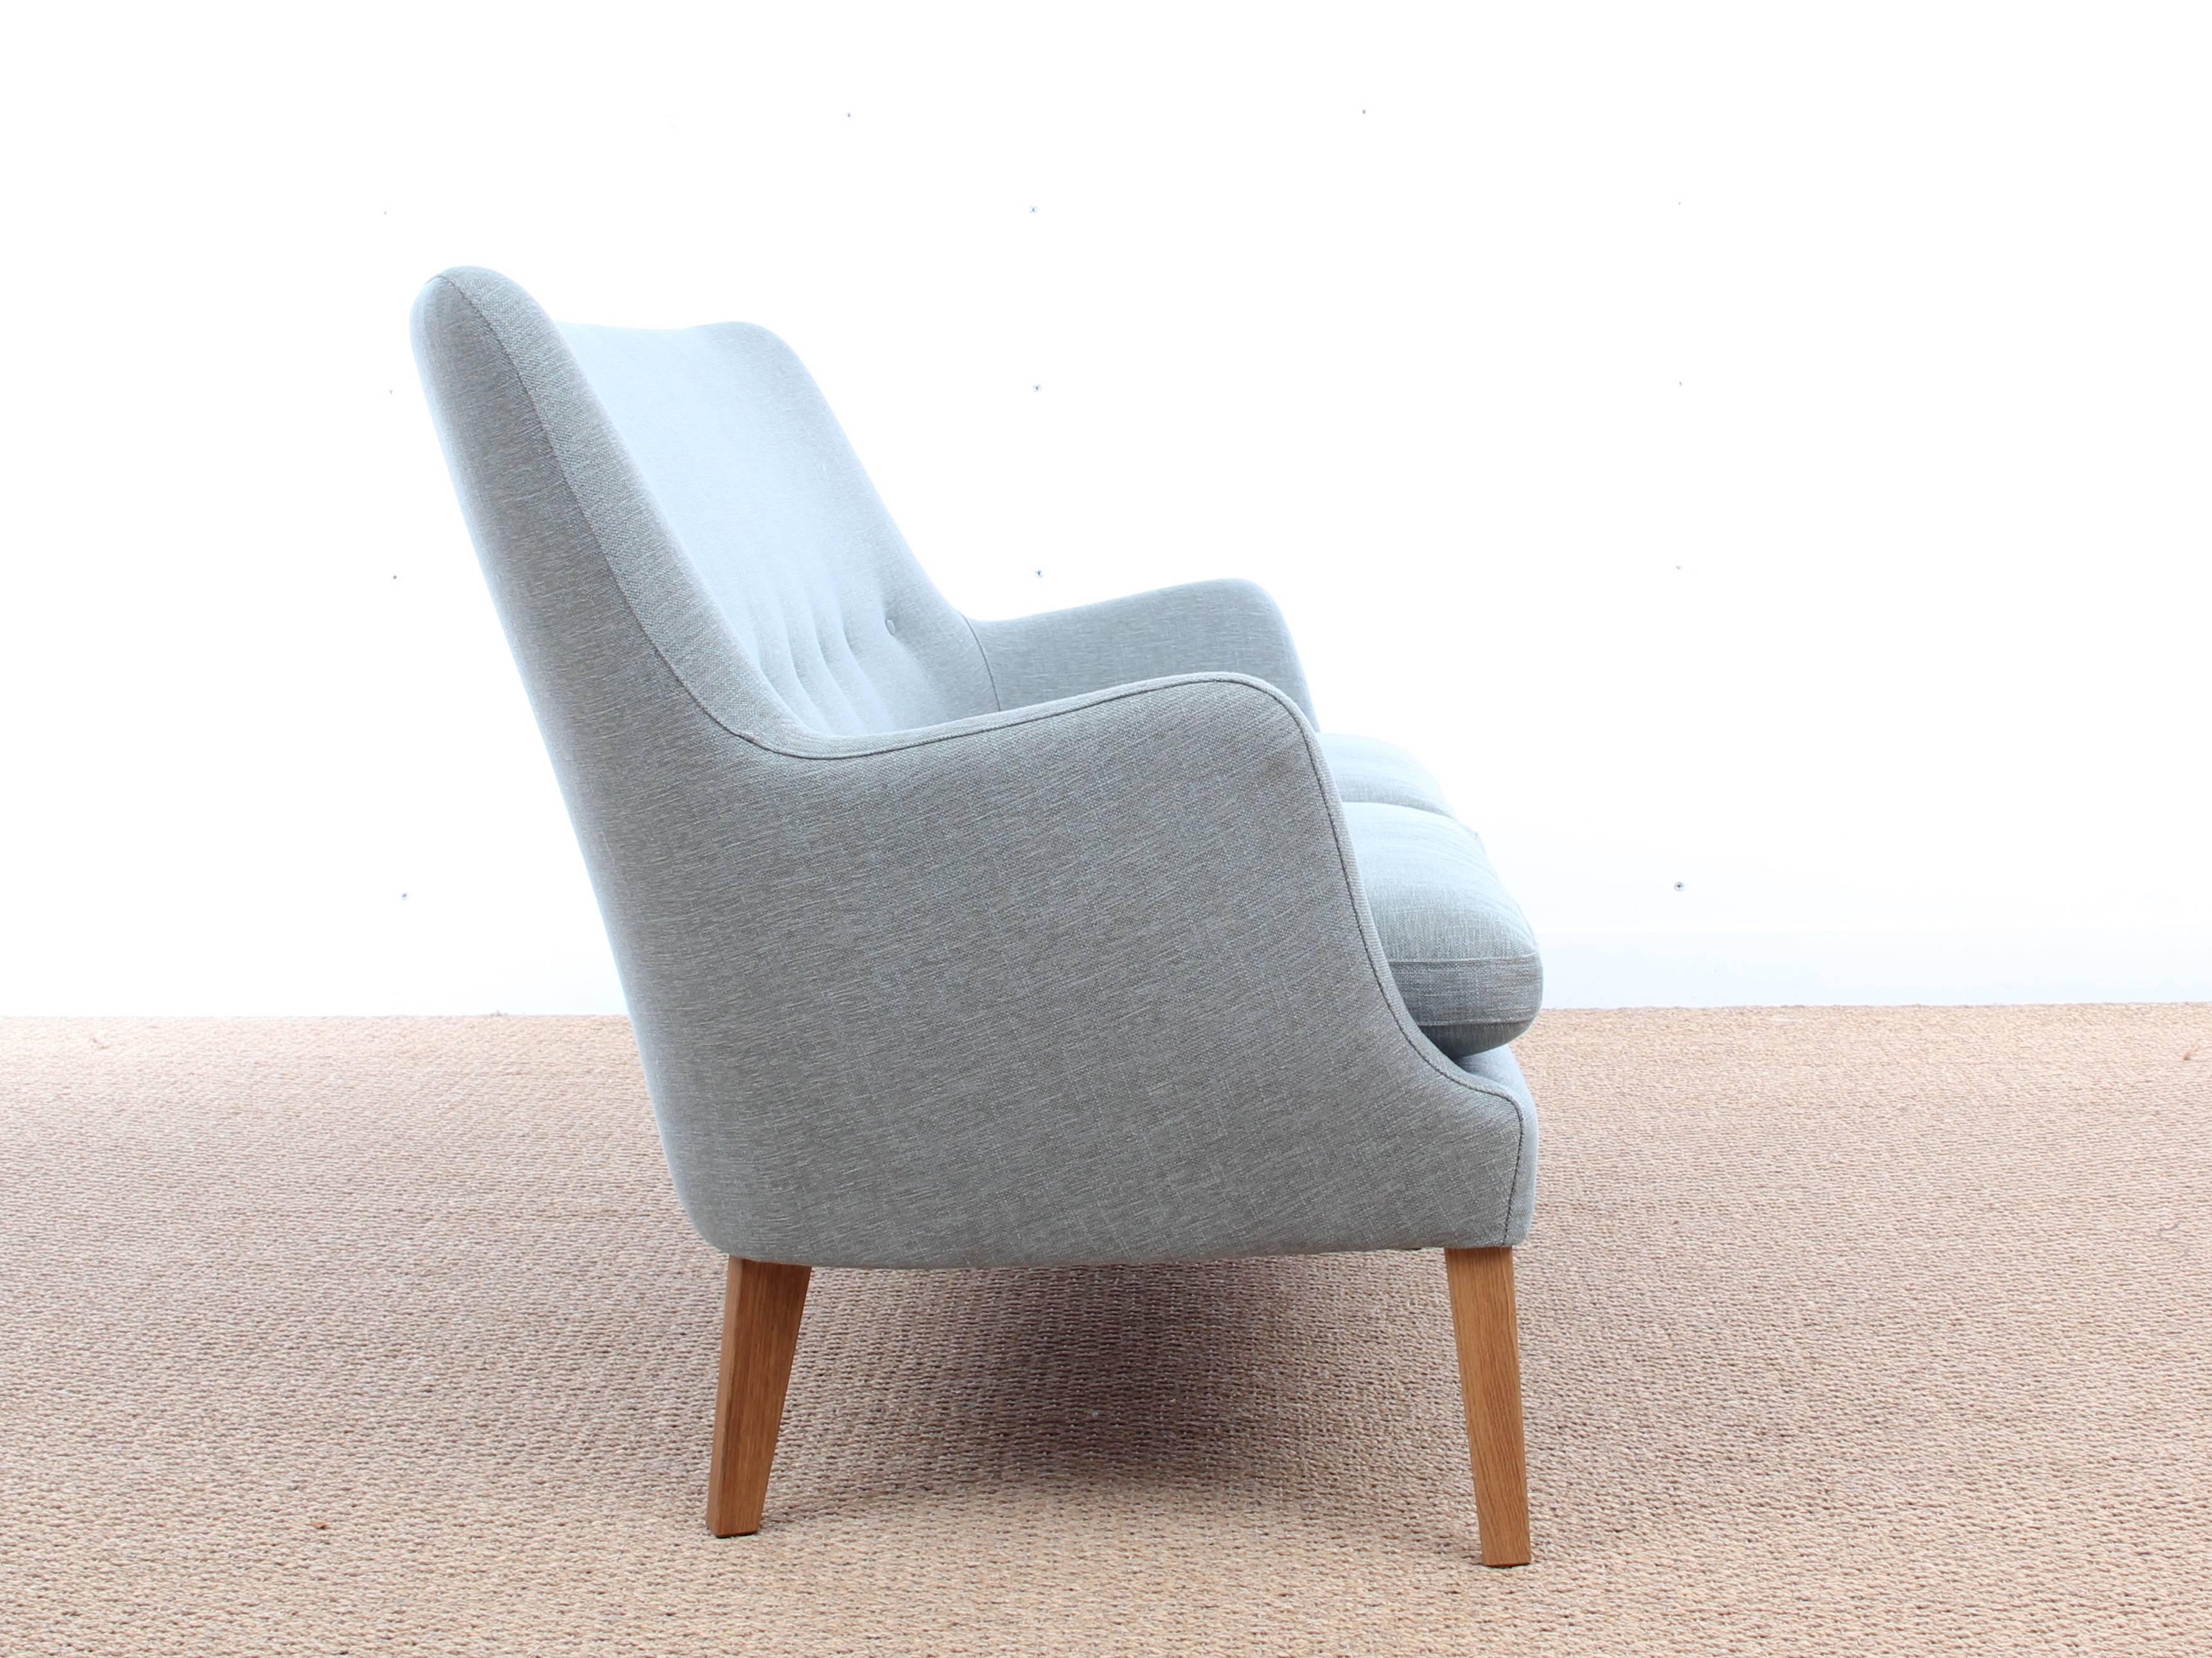 Mid-Century Modern skandinavischen zwei Sitze Sofa von Arne Vodder AV 53 neue Version. Nur auf Anfrage. Lieferfrist: 6 Wochen. Erhältlich in drei verschiedenen Stoffen. Muster auf Anfrage.